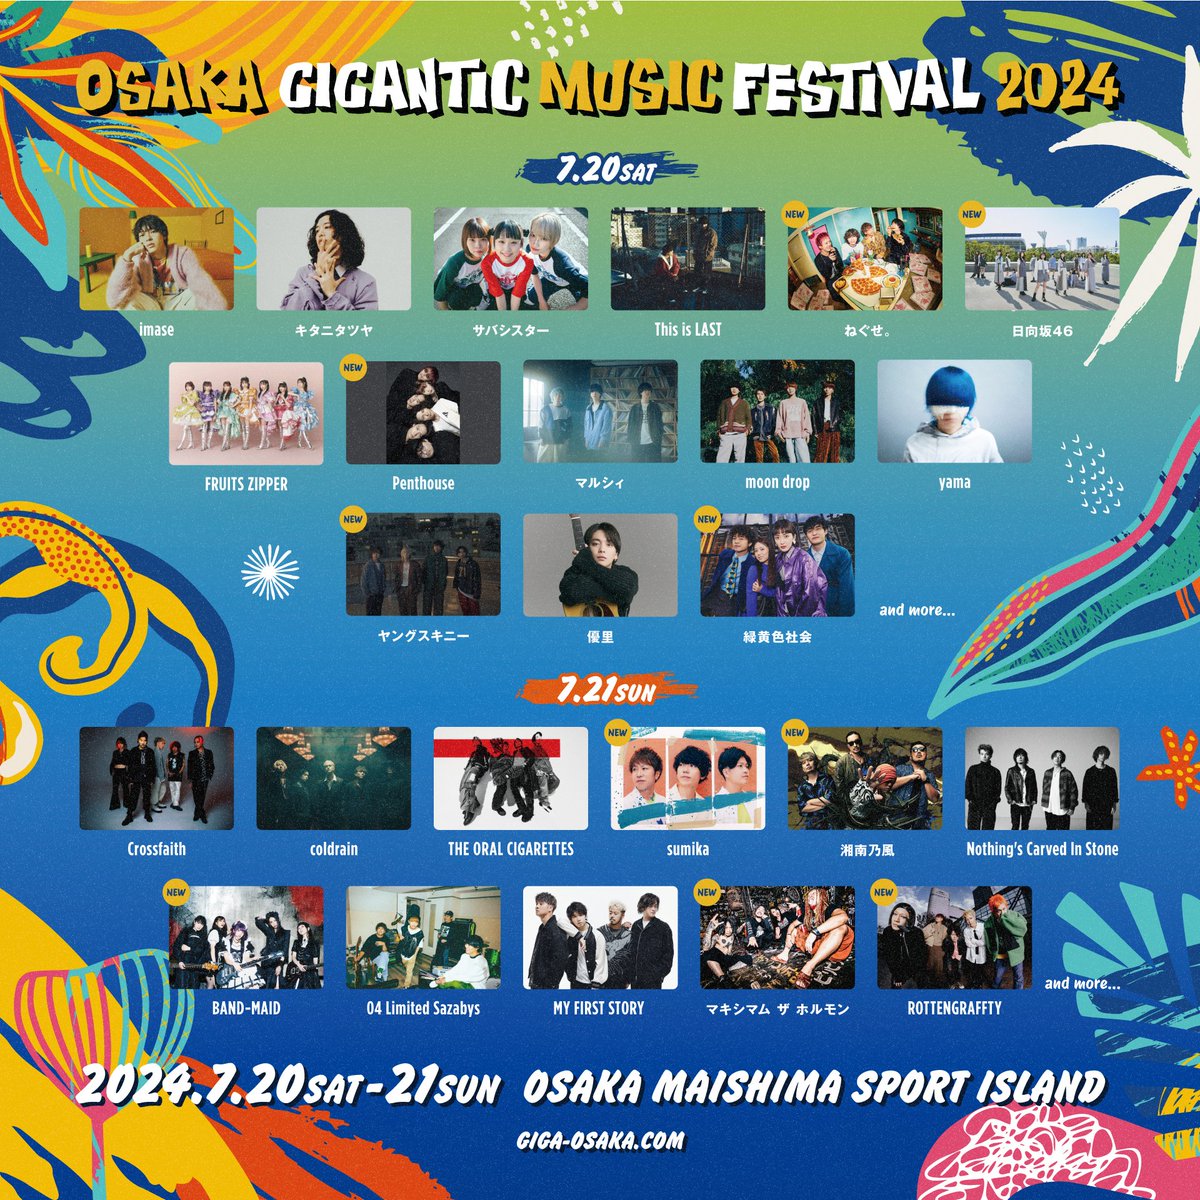 【出演日決定！】 「OSAKA GIGANTIC MUSIC FESTIVAL 2024」の出演日が決定しました！ オーラルは7/21に出演します🔥🔥 詳細はイベントHPをご覧ください！ ▼イベントHP giga-osaka.com